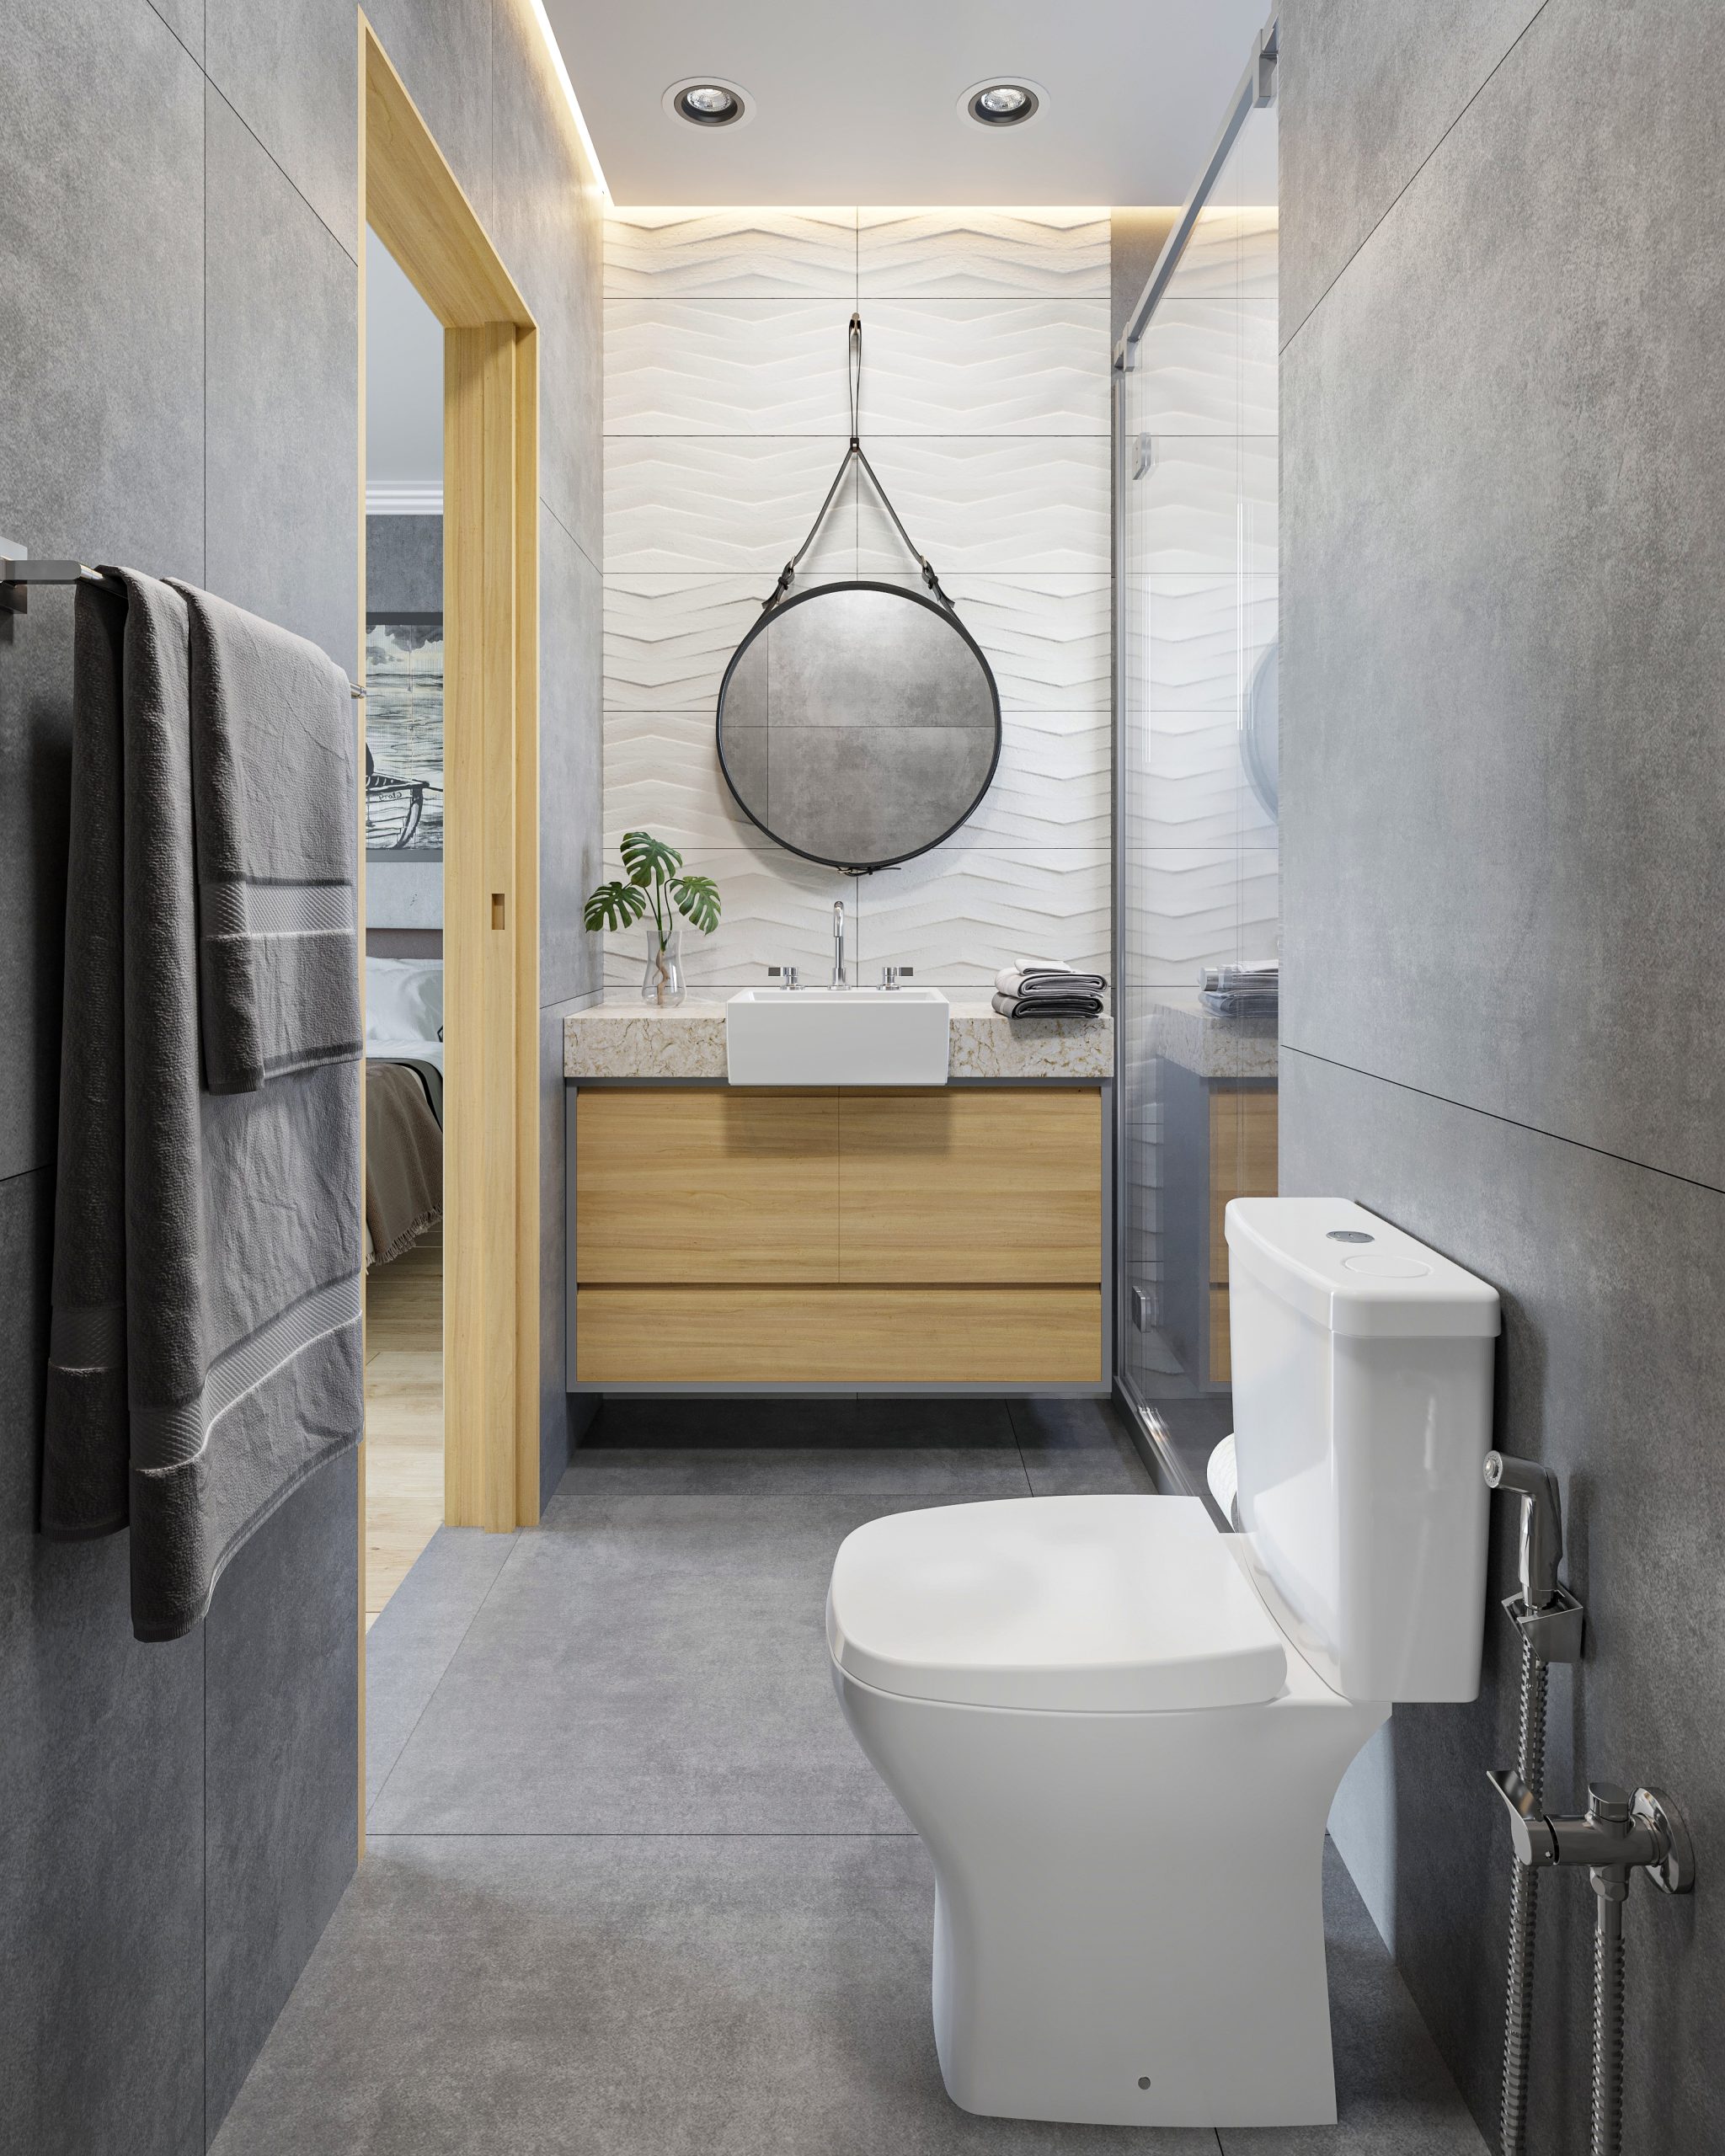 Banheiros com medidas verdadeiramente compactas ganham mais conforto com as louças e metais certos